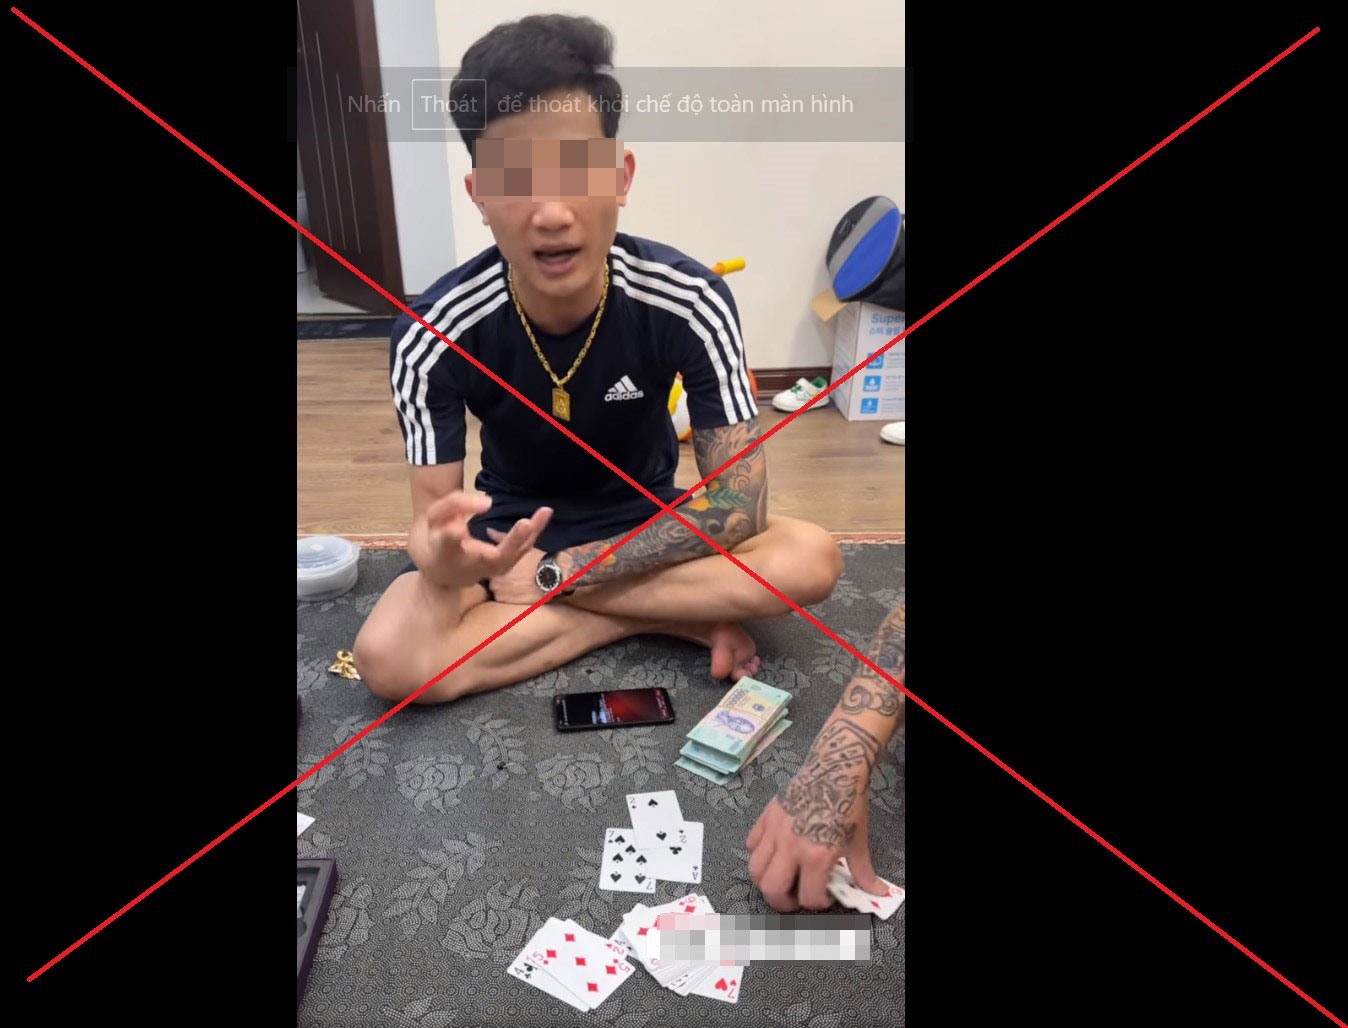 Chủ Fanpage “Đồ bịp anh dương” phát video công khai quá trình đánh bạc. Ảnh chụp màn hình